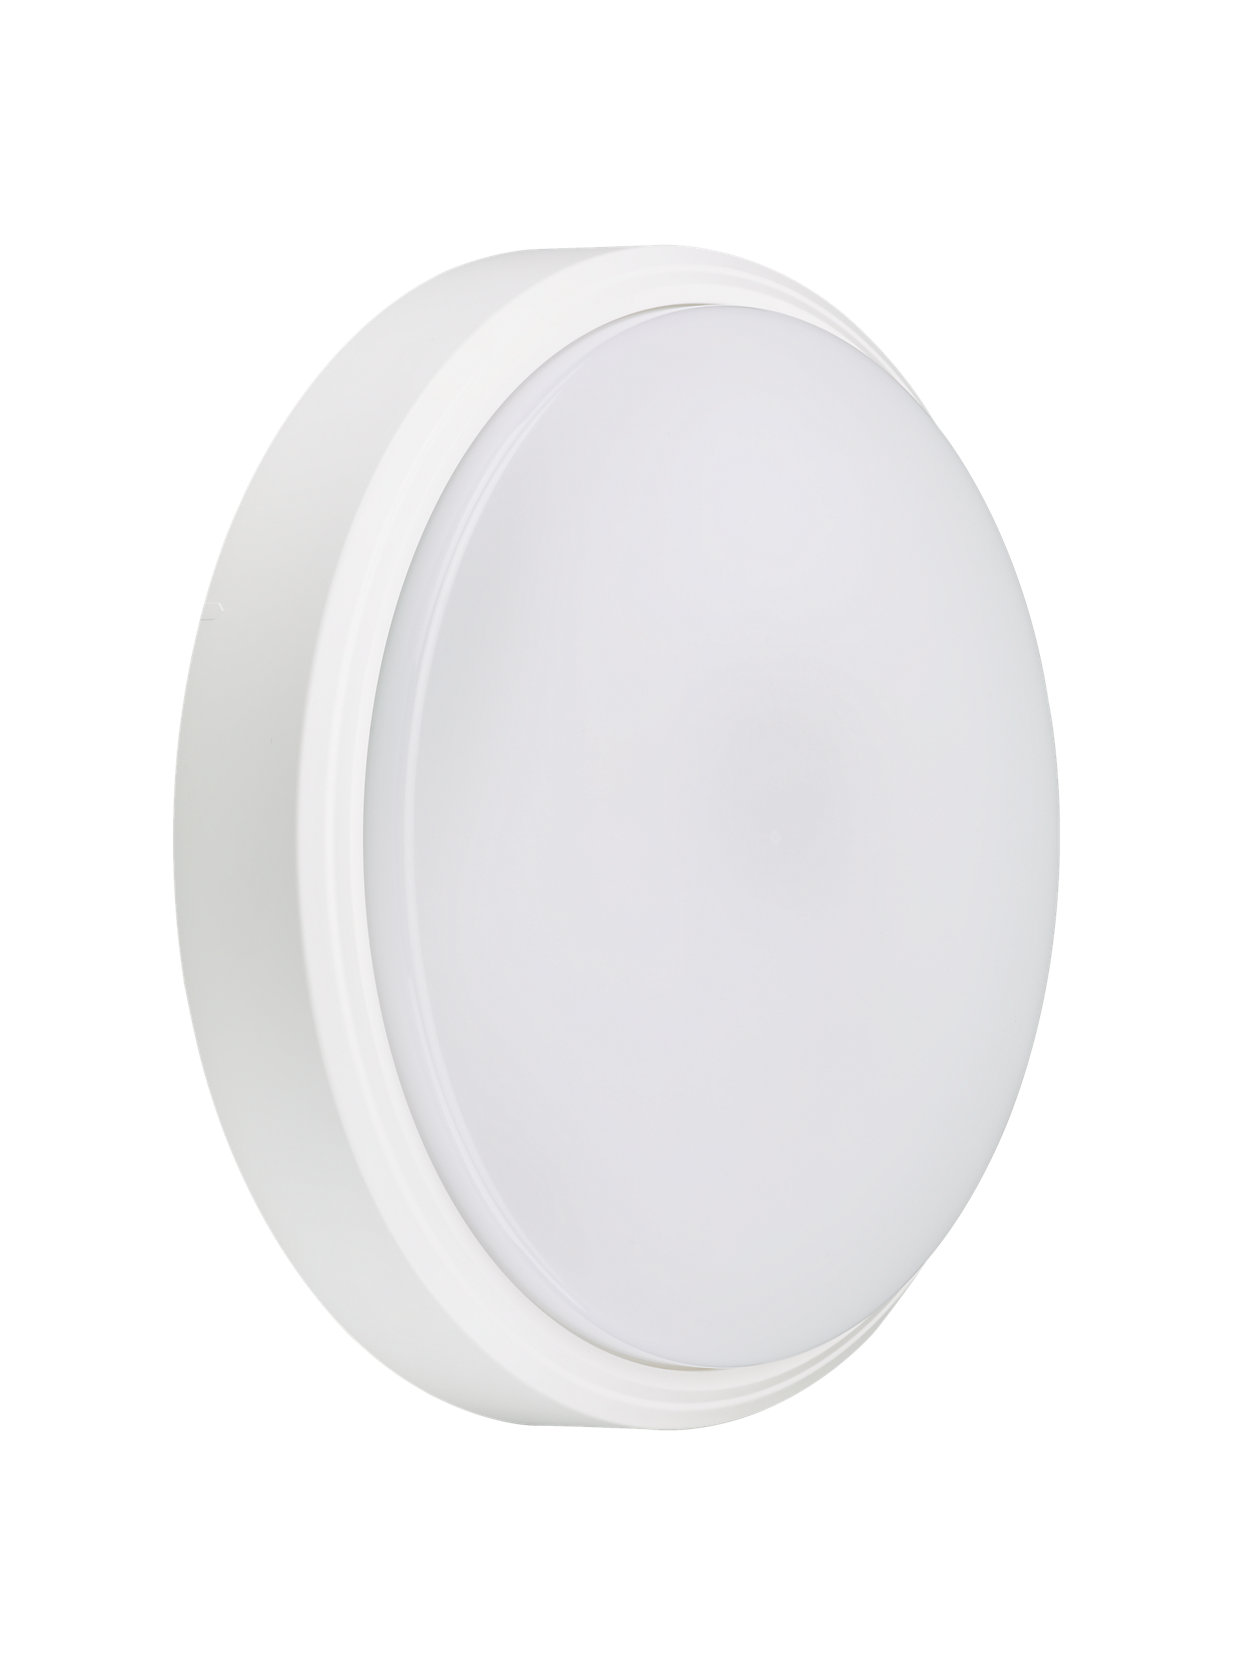 CoreLine Wall-mounted - La scelta ideale per passare alla tecnologia LED